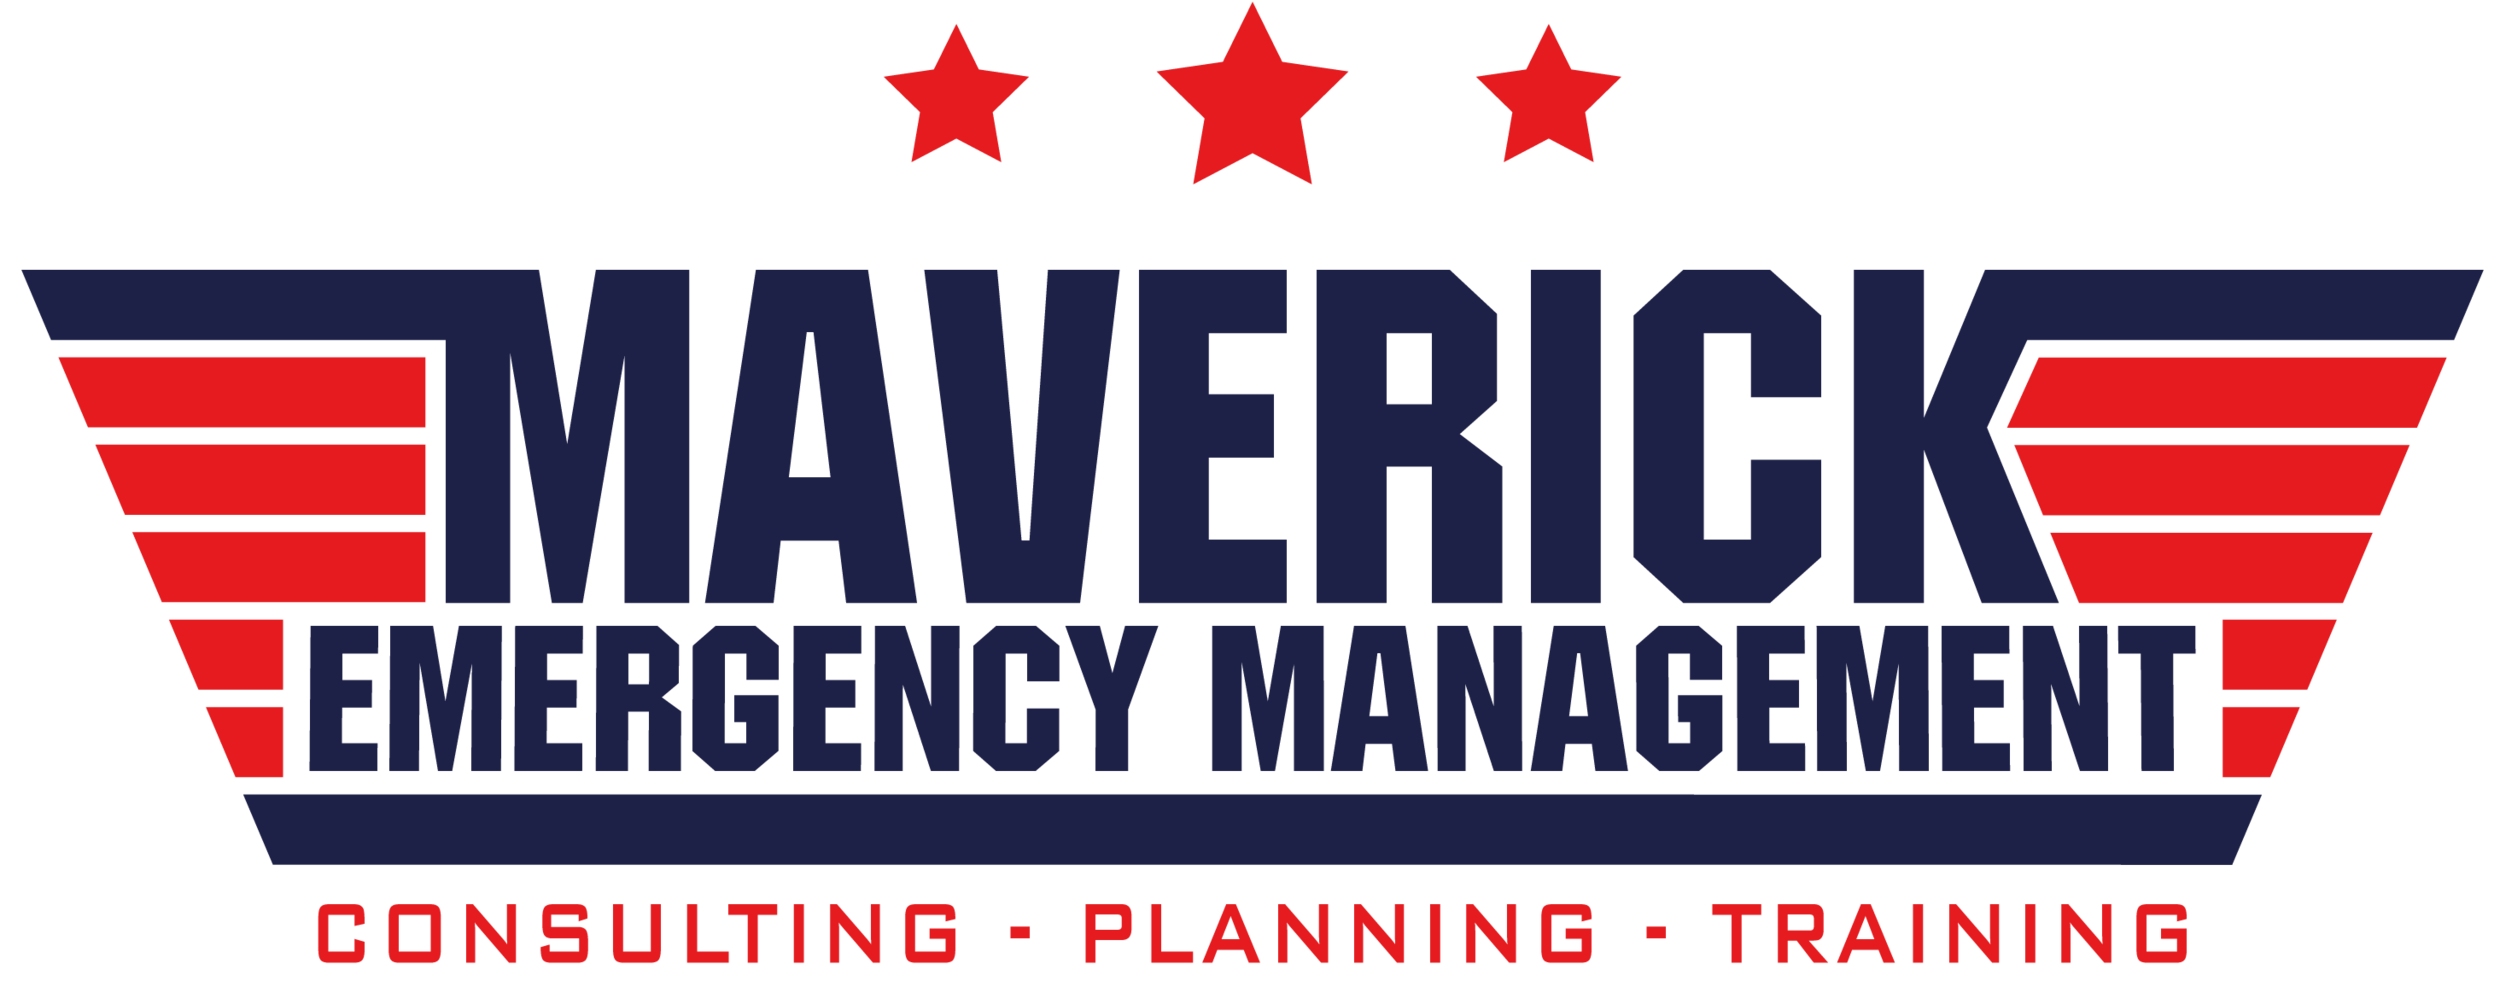 Maverick Emergency Management